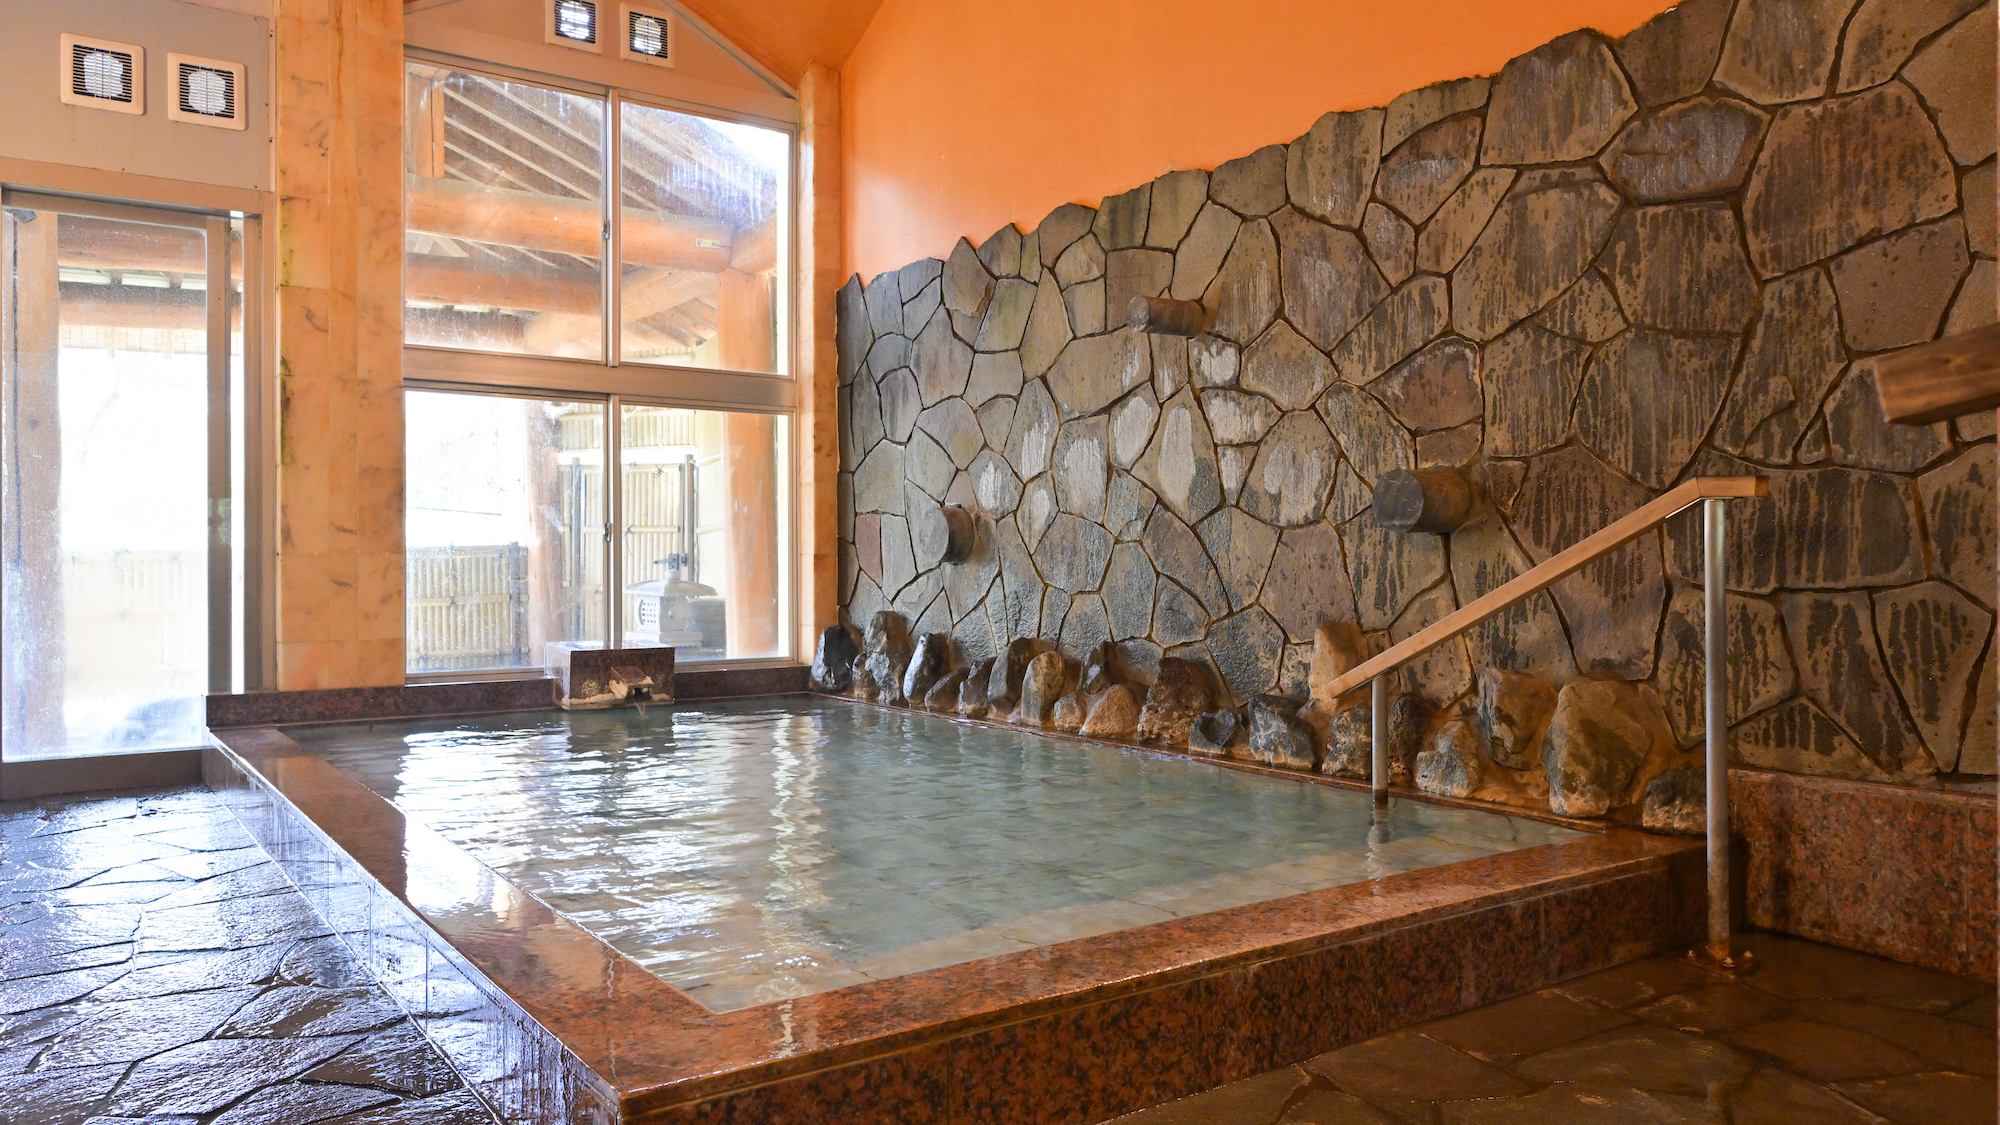 【大浴場（女湯）内風呂】美肌効果のある群馬猿ヶ京温泉の湯を、ご滞在中いつでもご堪能いただけます。